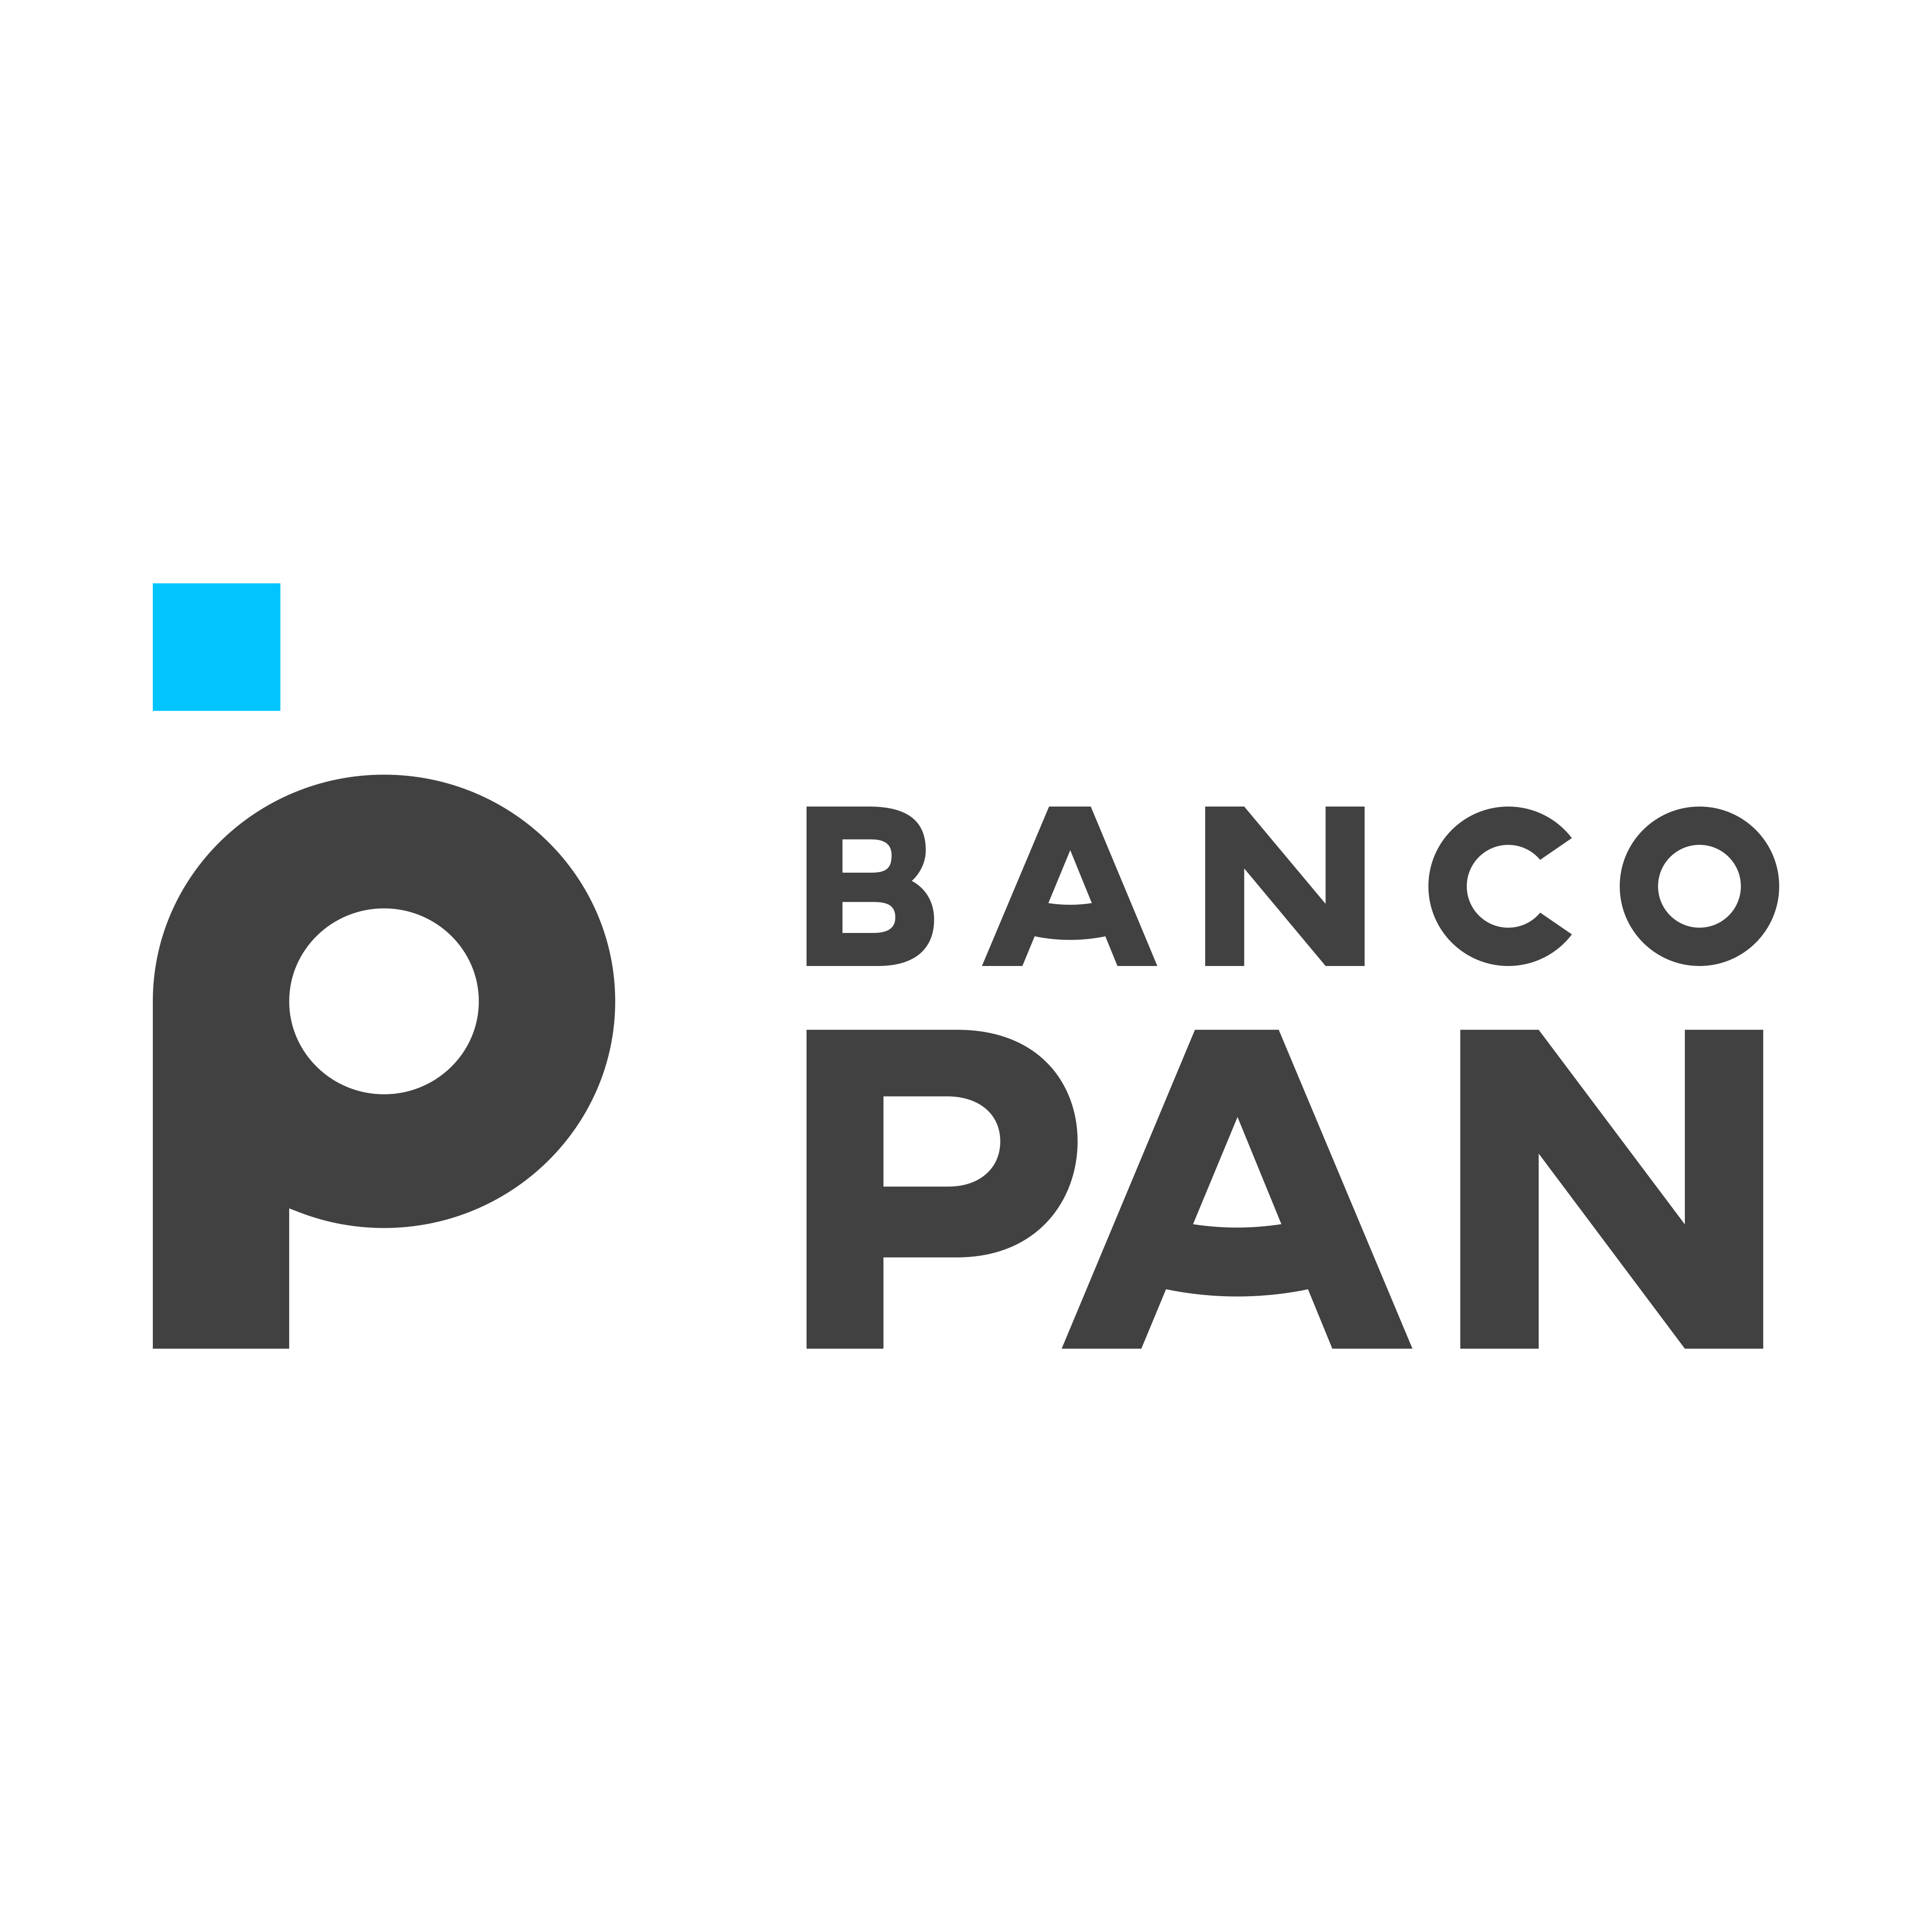 banco-pan-logo-0-1-2-1.png